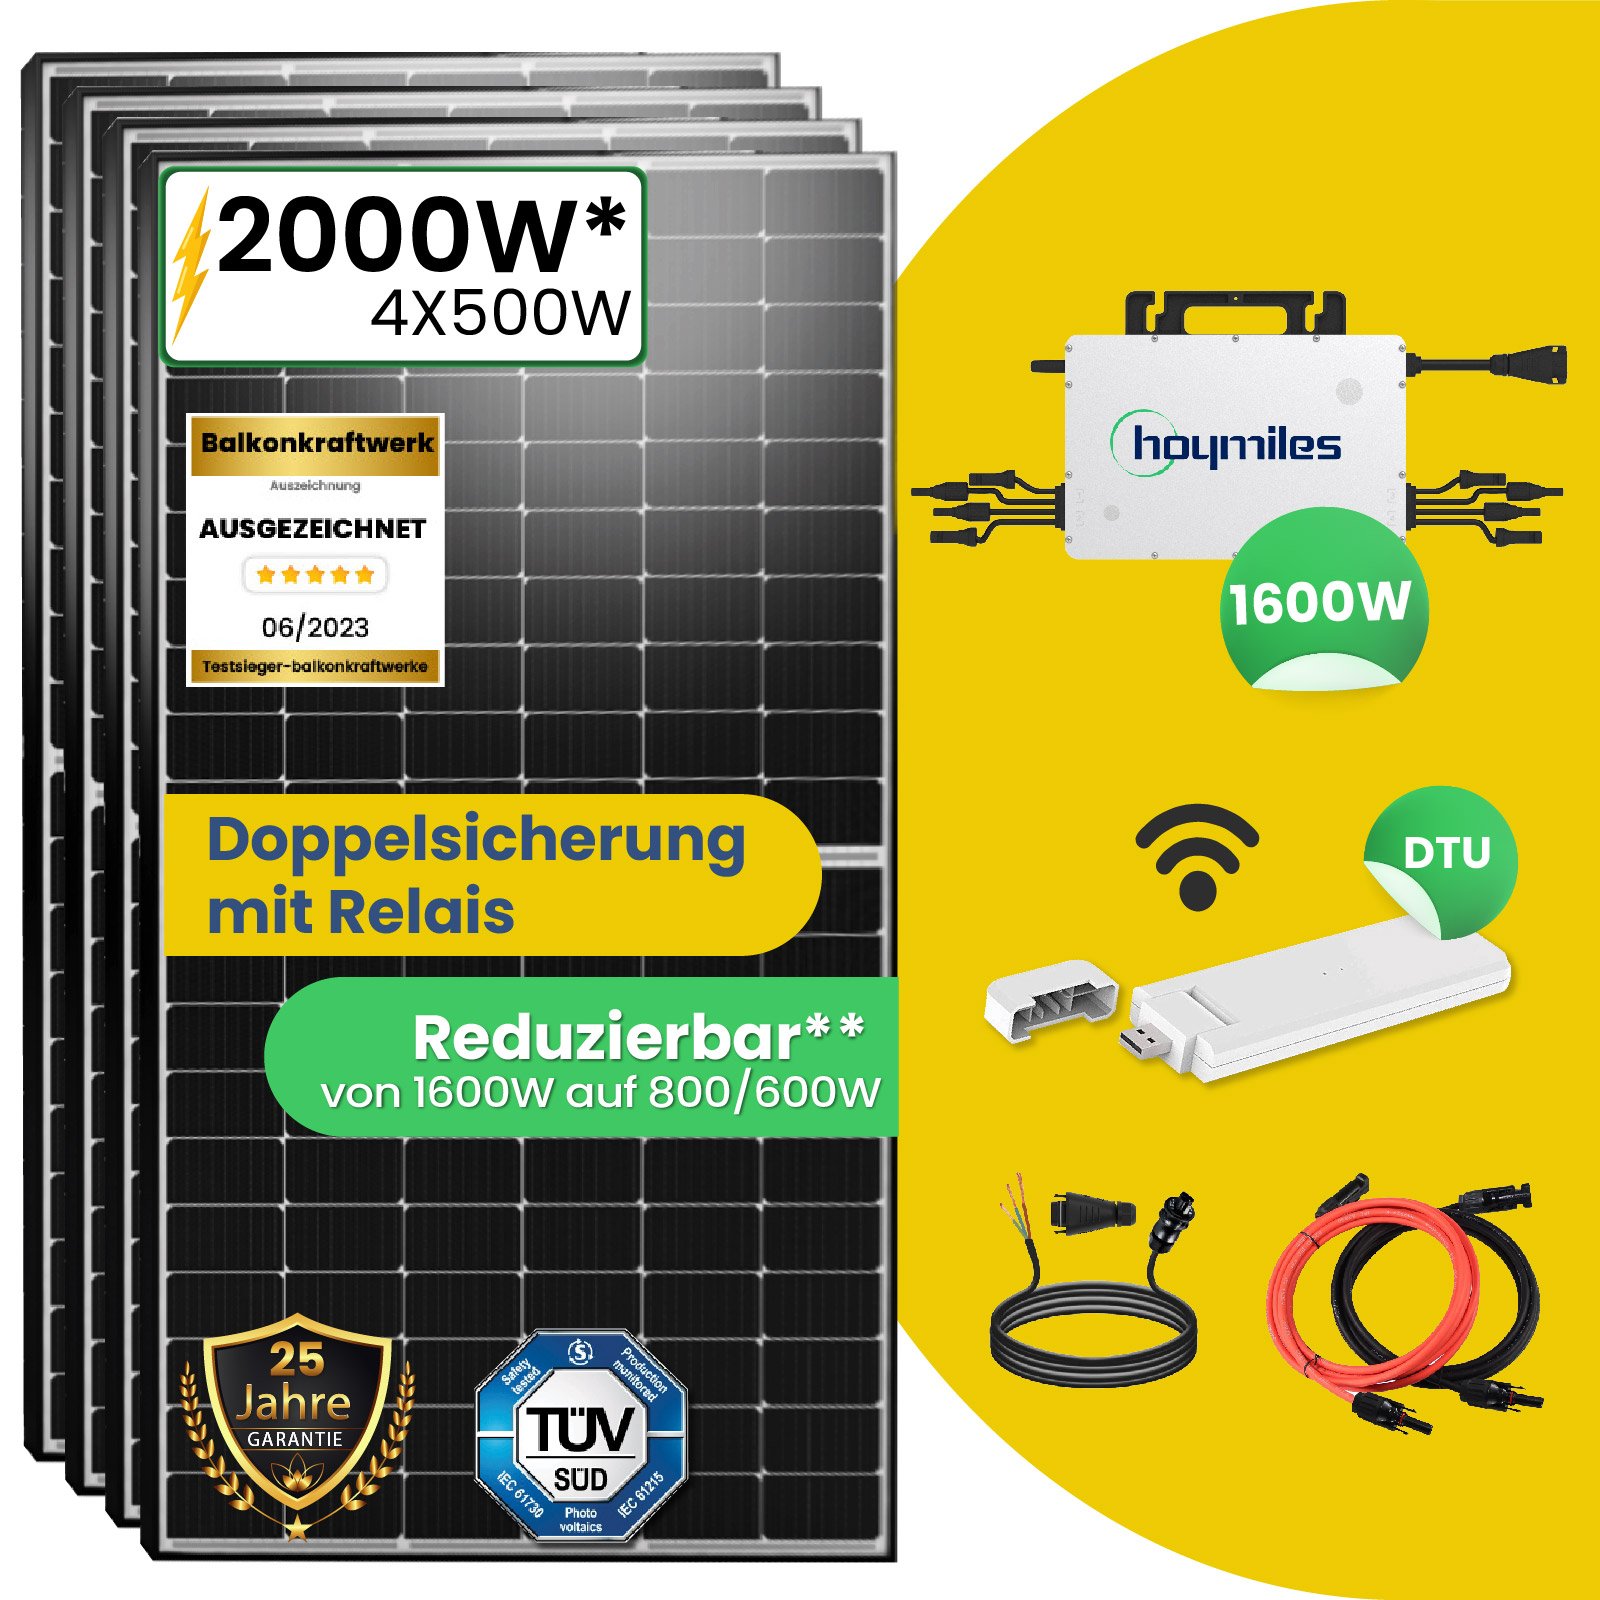 2000W Photovoltaik Balkonkraftwerk mit EPP 500W Solarmodule und Hoymiles  HMS-1600-4T Wechselrichter - Stegpearl